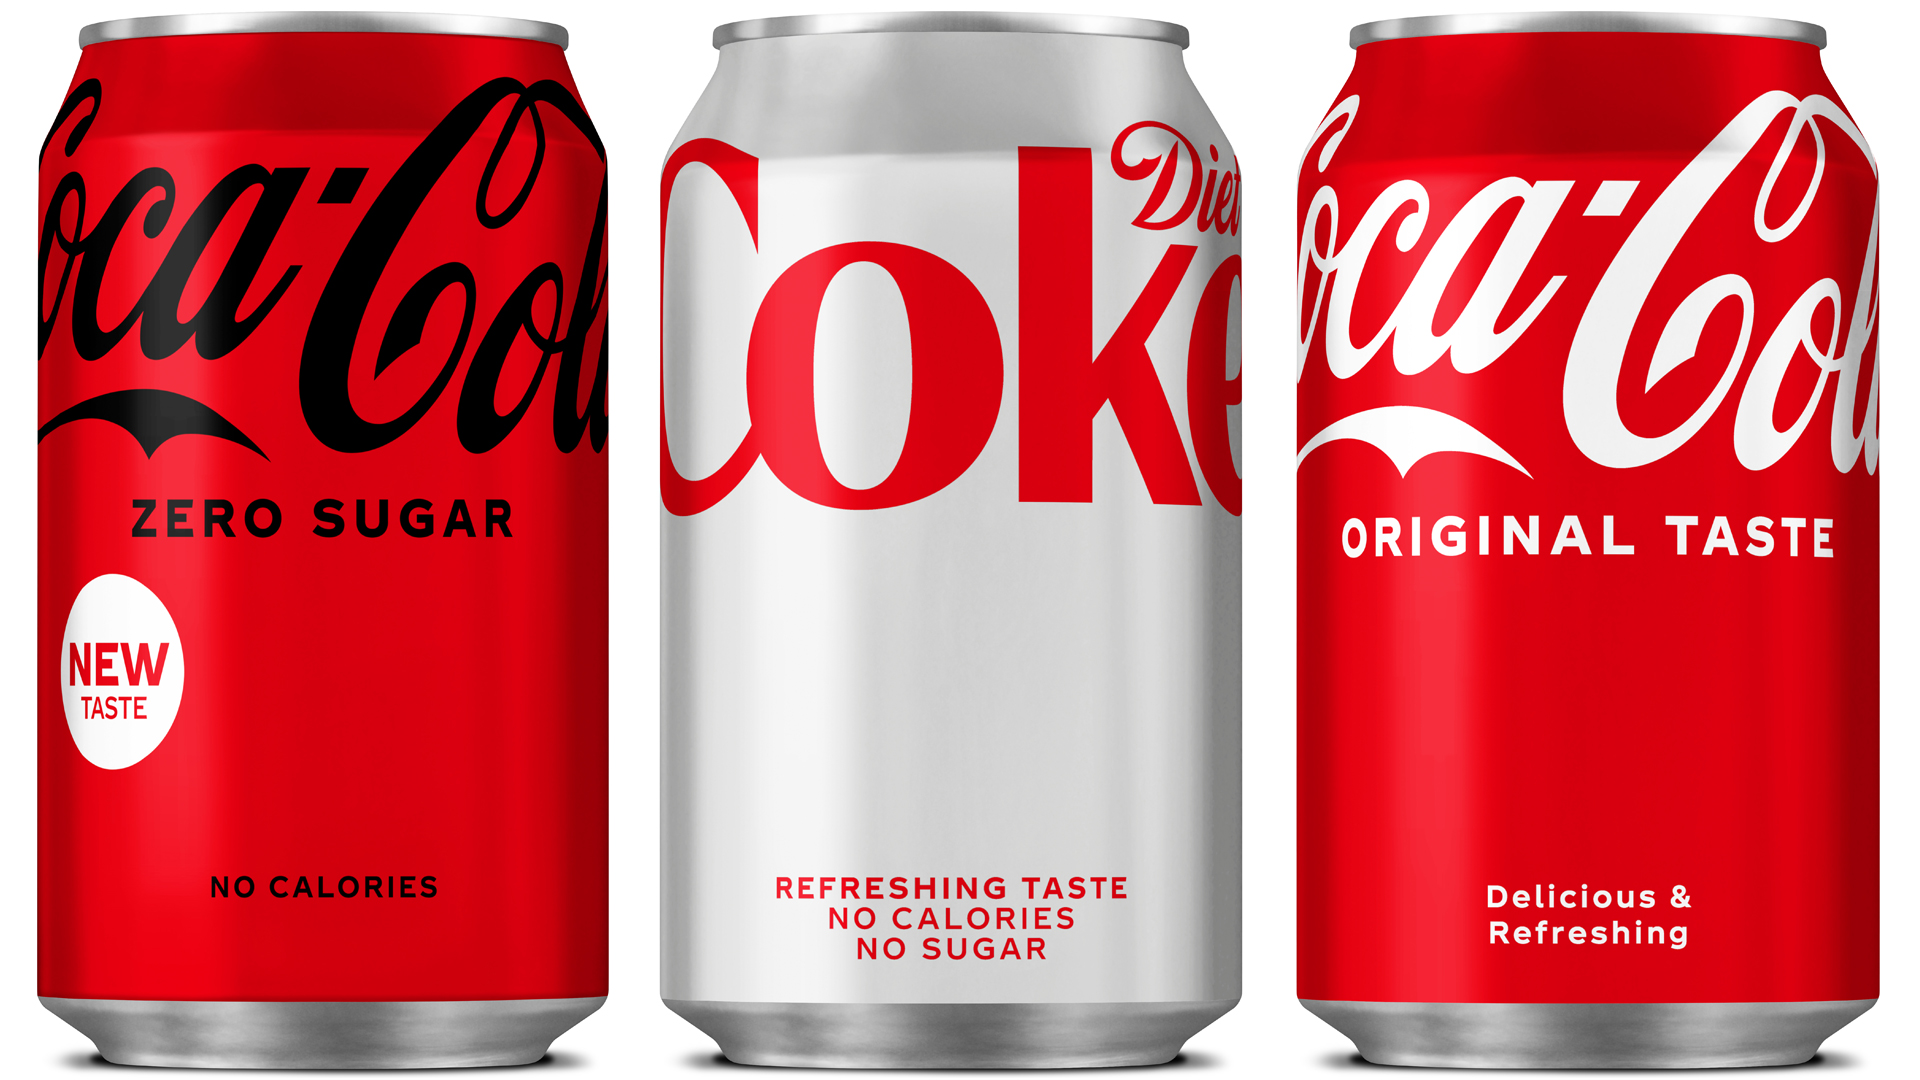 Paleis moeilijk tevreden te krijgen uitblinken Media Marketing | News | Coca-Cola herziet het design van zijn blikjes en  voert opnieuw campagne